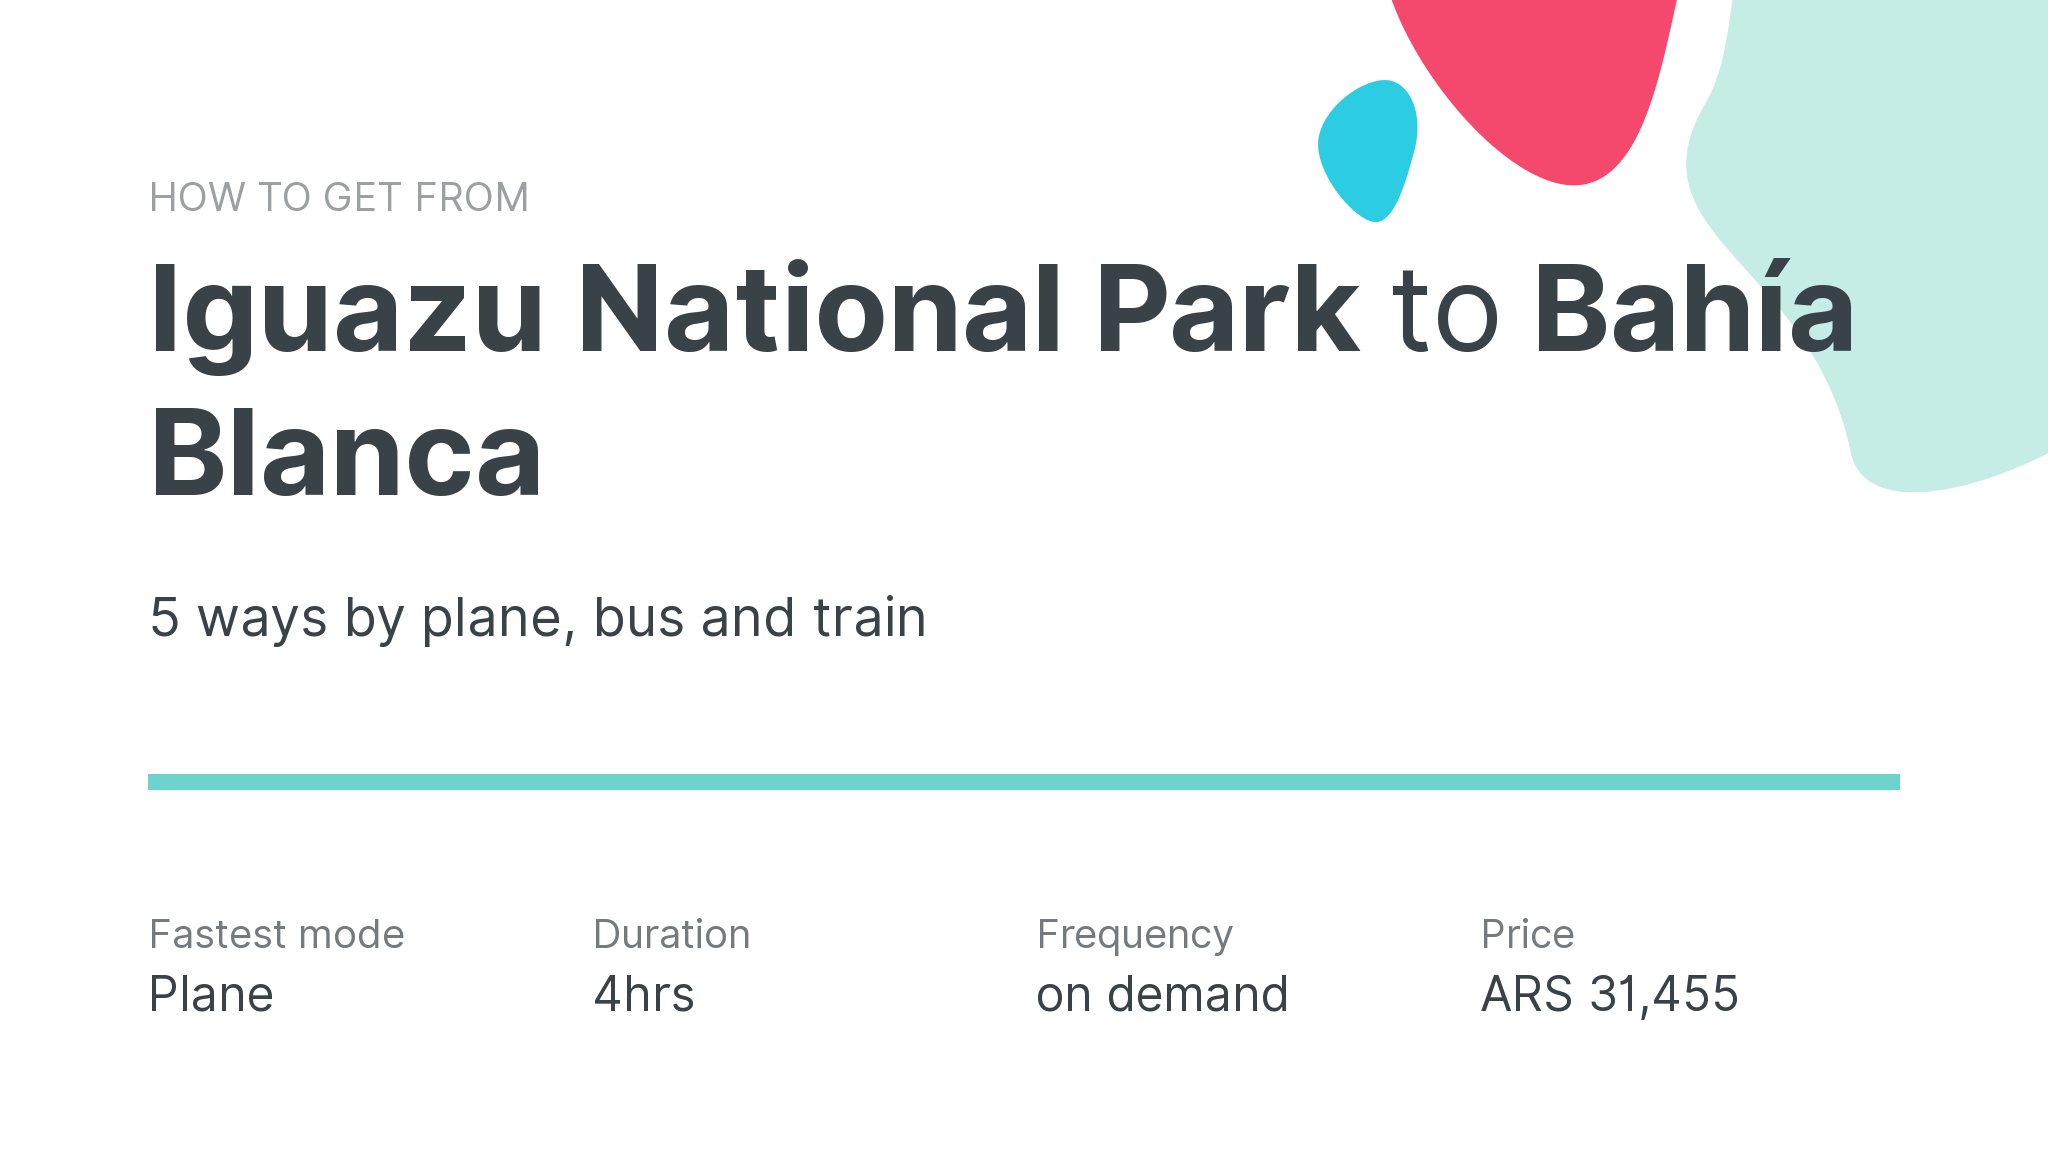 How do I get from Iguazu National Park to Bahía Blanca